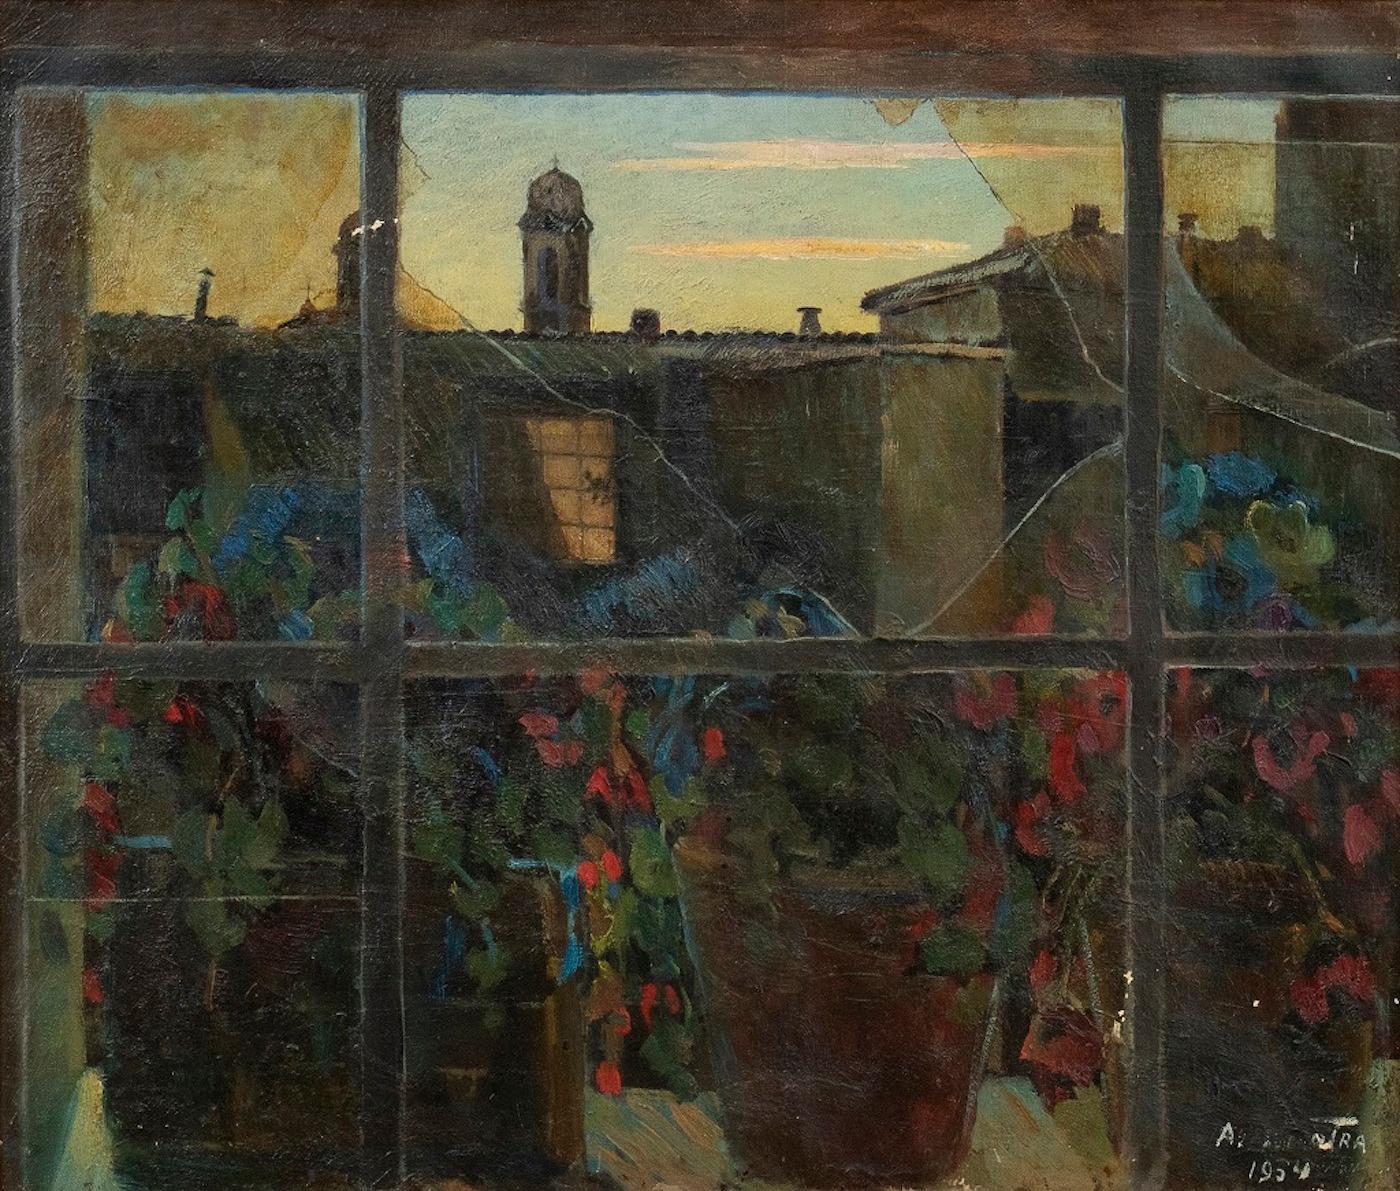 View of Via Margutta - Original Öl auf Leinwand von N. da Cosenza - 1954